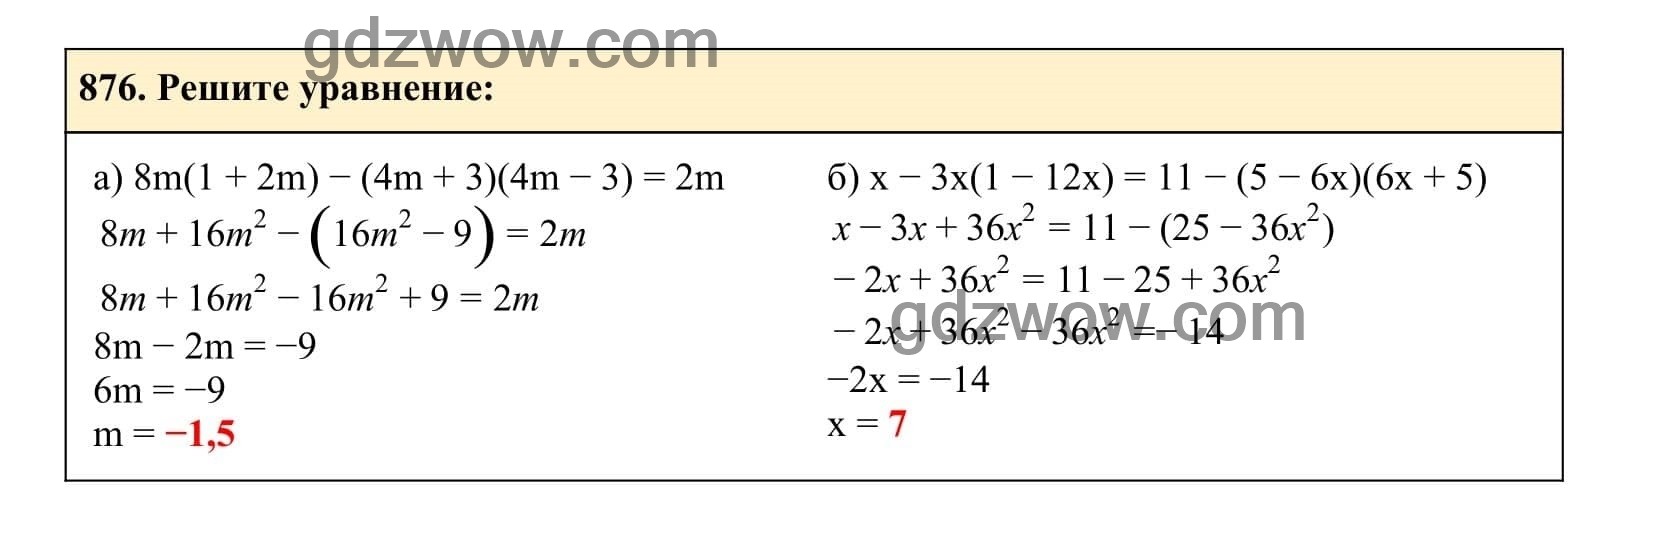 Упражнение 876 - ГДЗ по Алгебре 7 класс Учебник Макарычев (решебник) - GDZwow